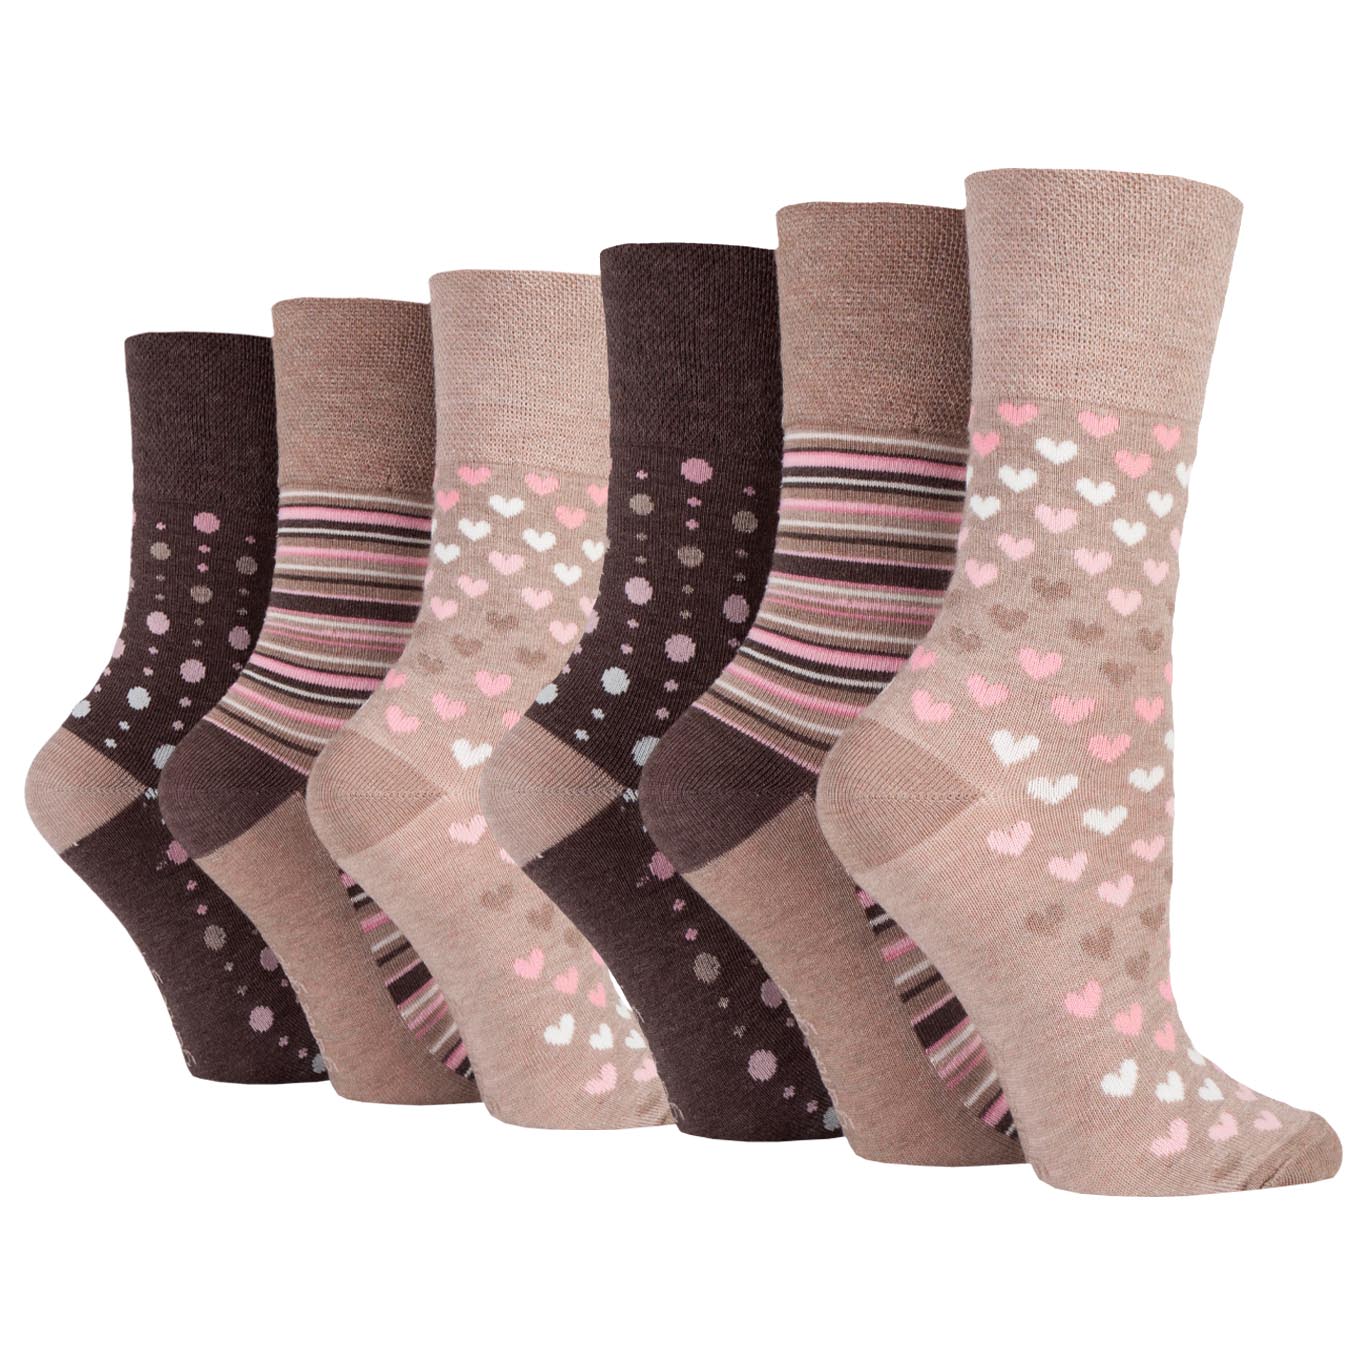 Gripper Socks for Women -  UK